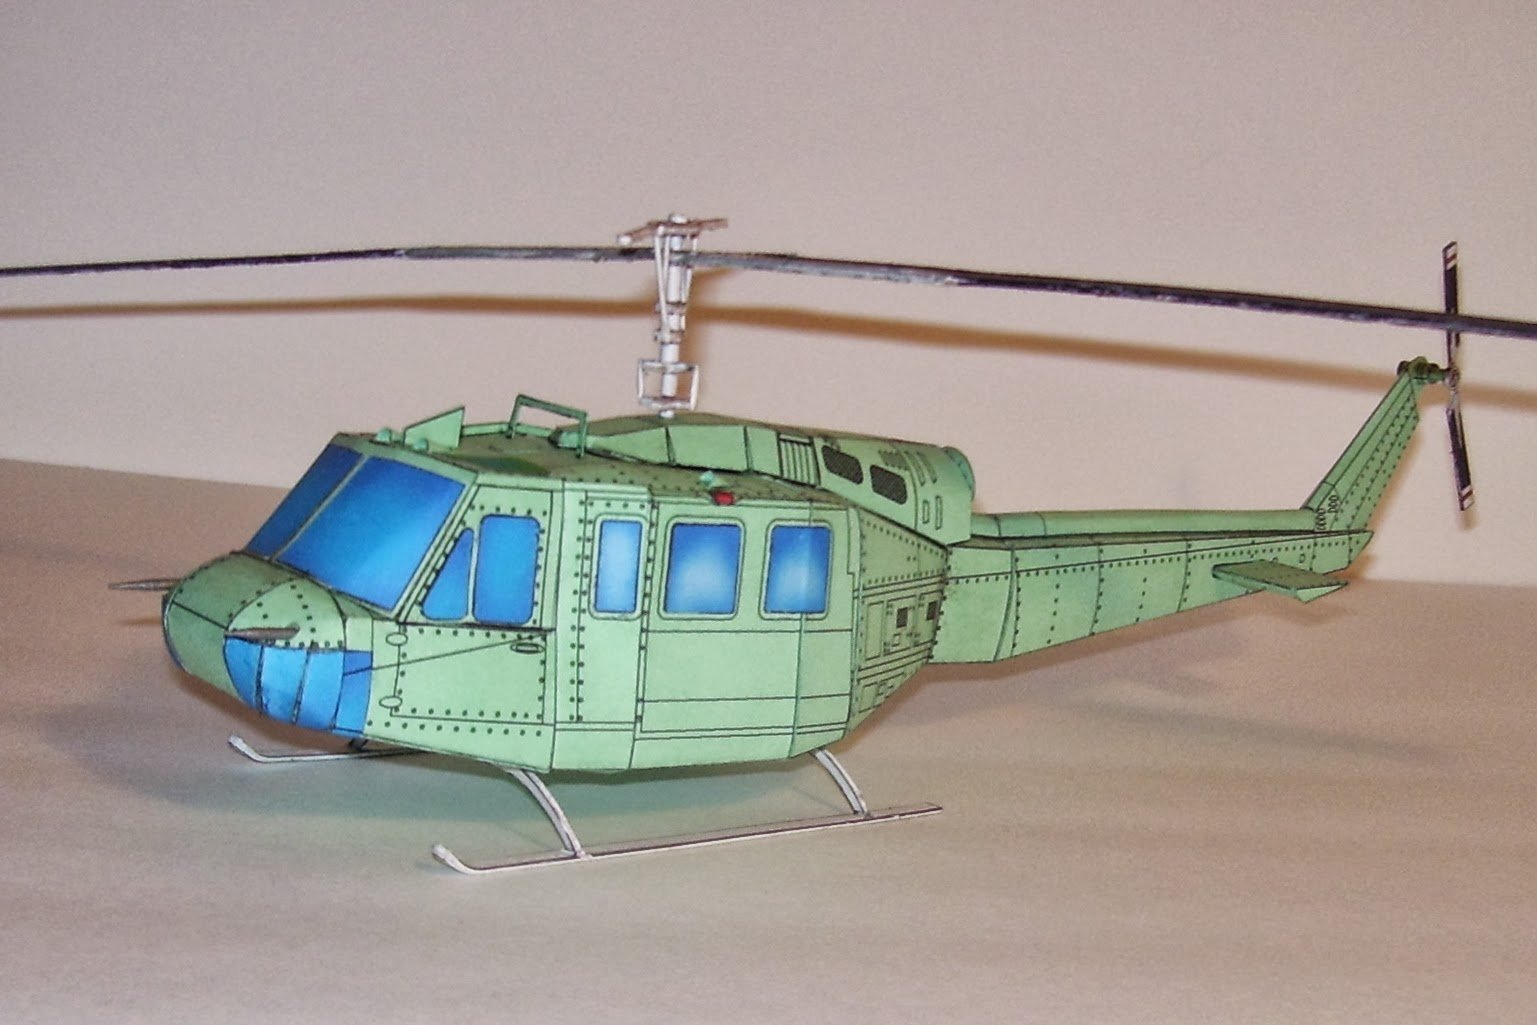 Поделки военный вертолет из картона идеи по изготовлению своими руками фото